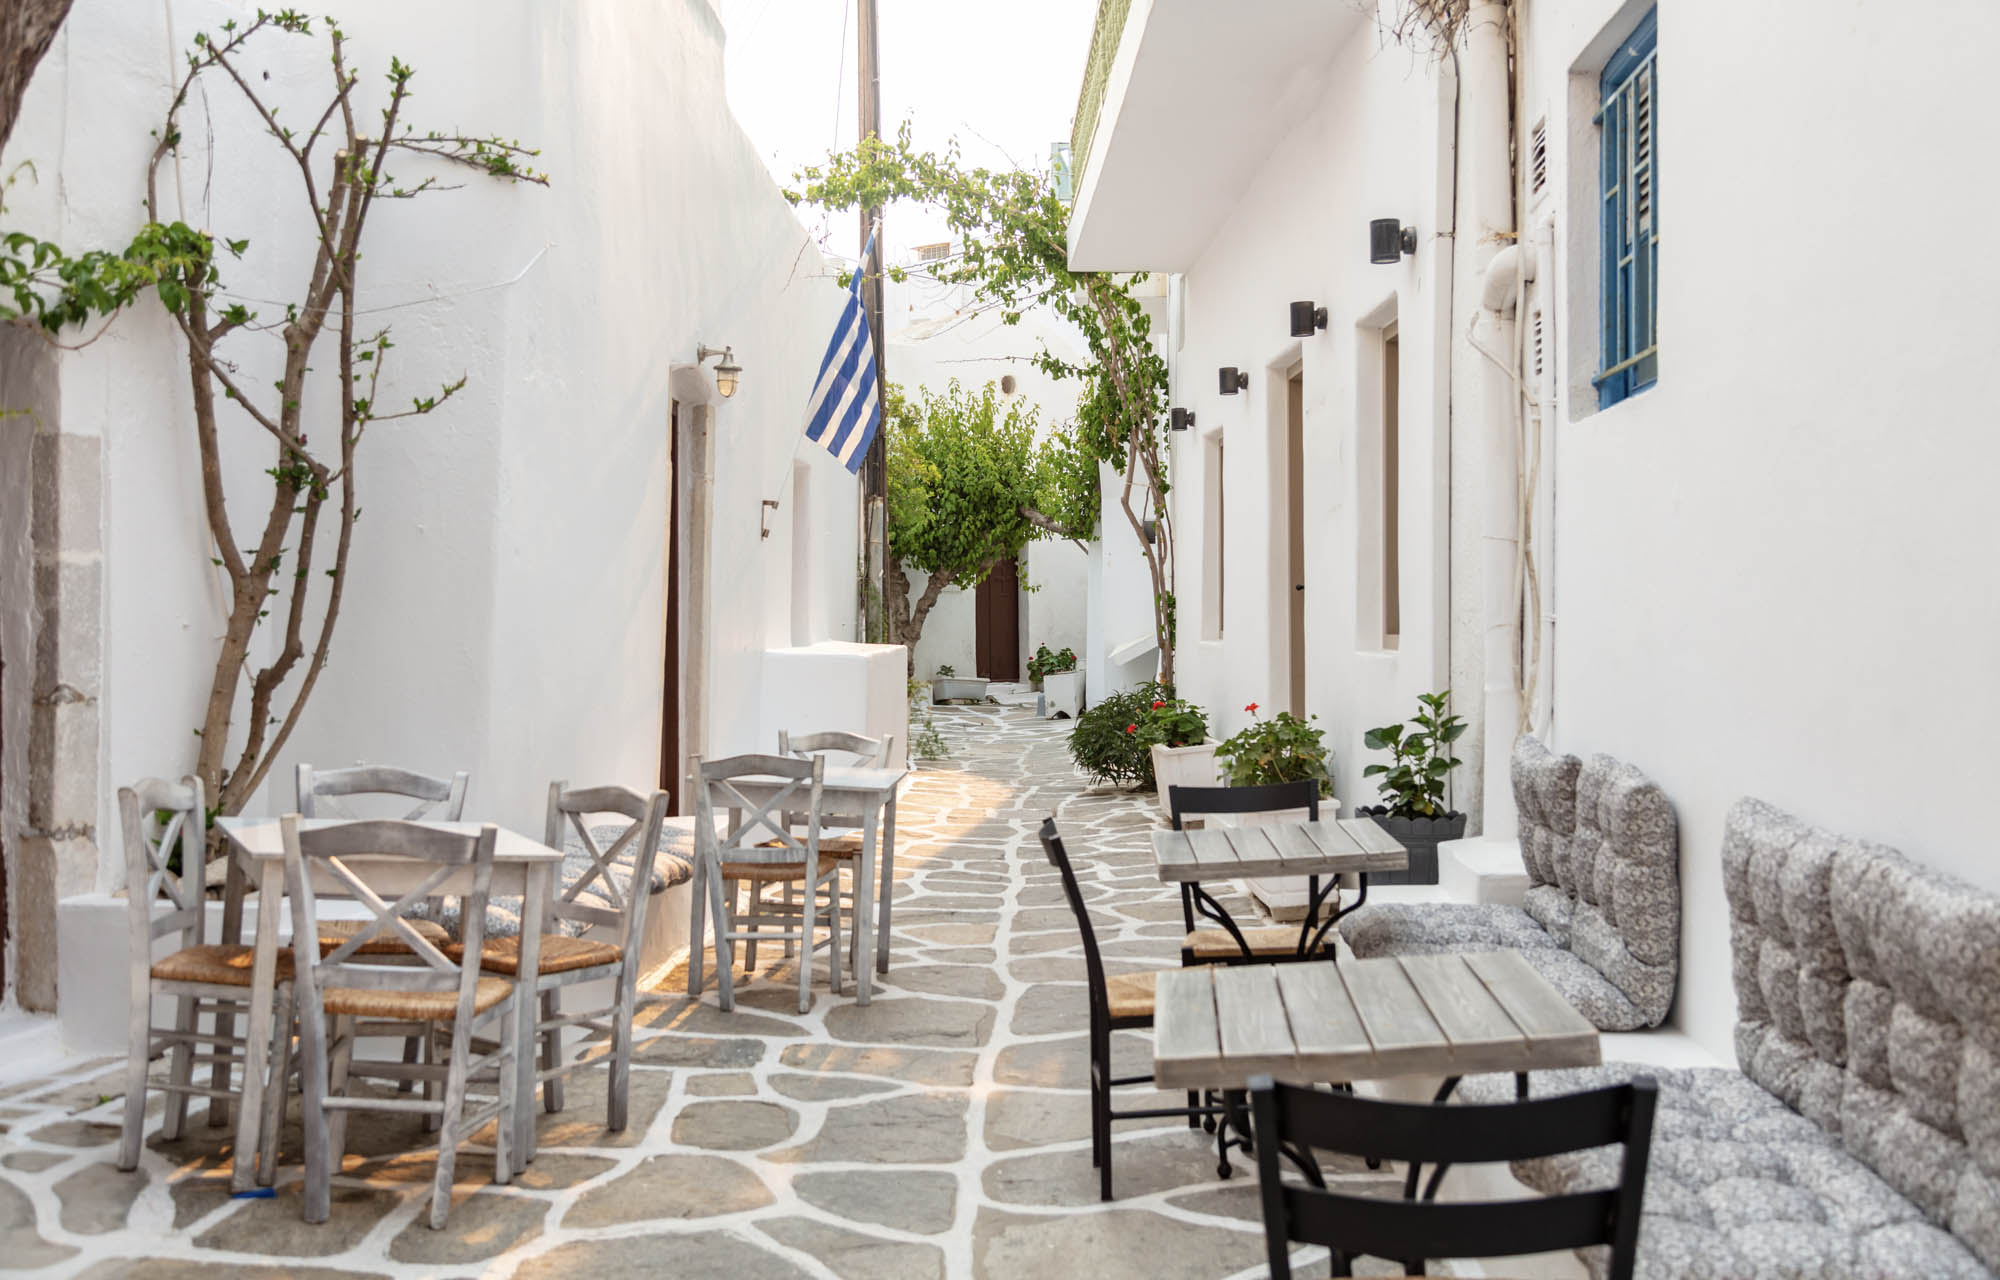 typowa grecka uliczka z kawiarnianymi stolikami